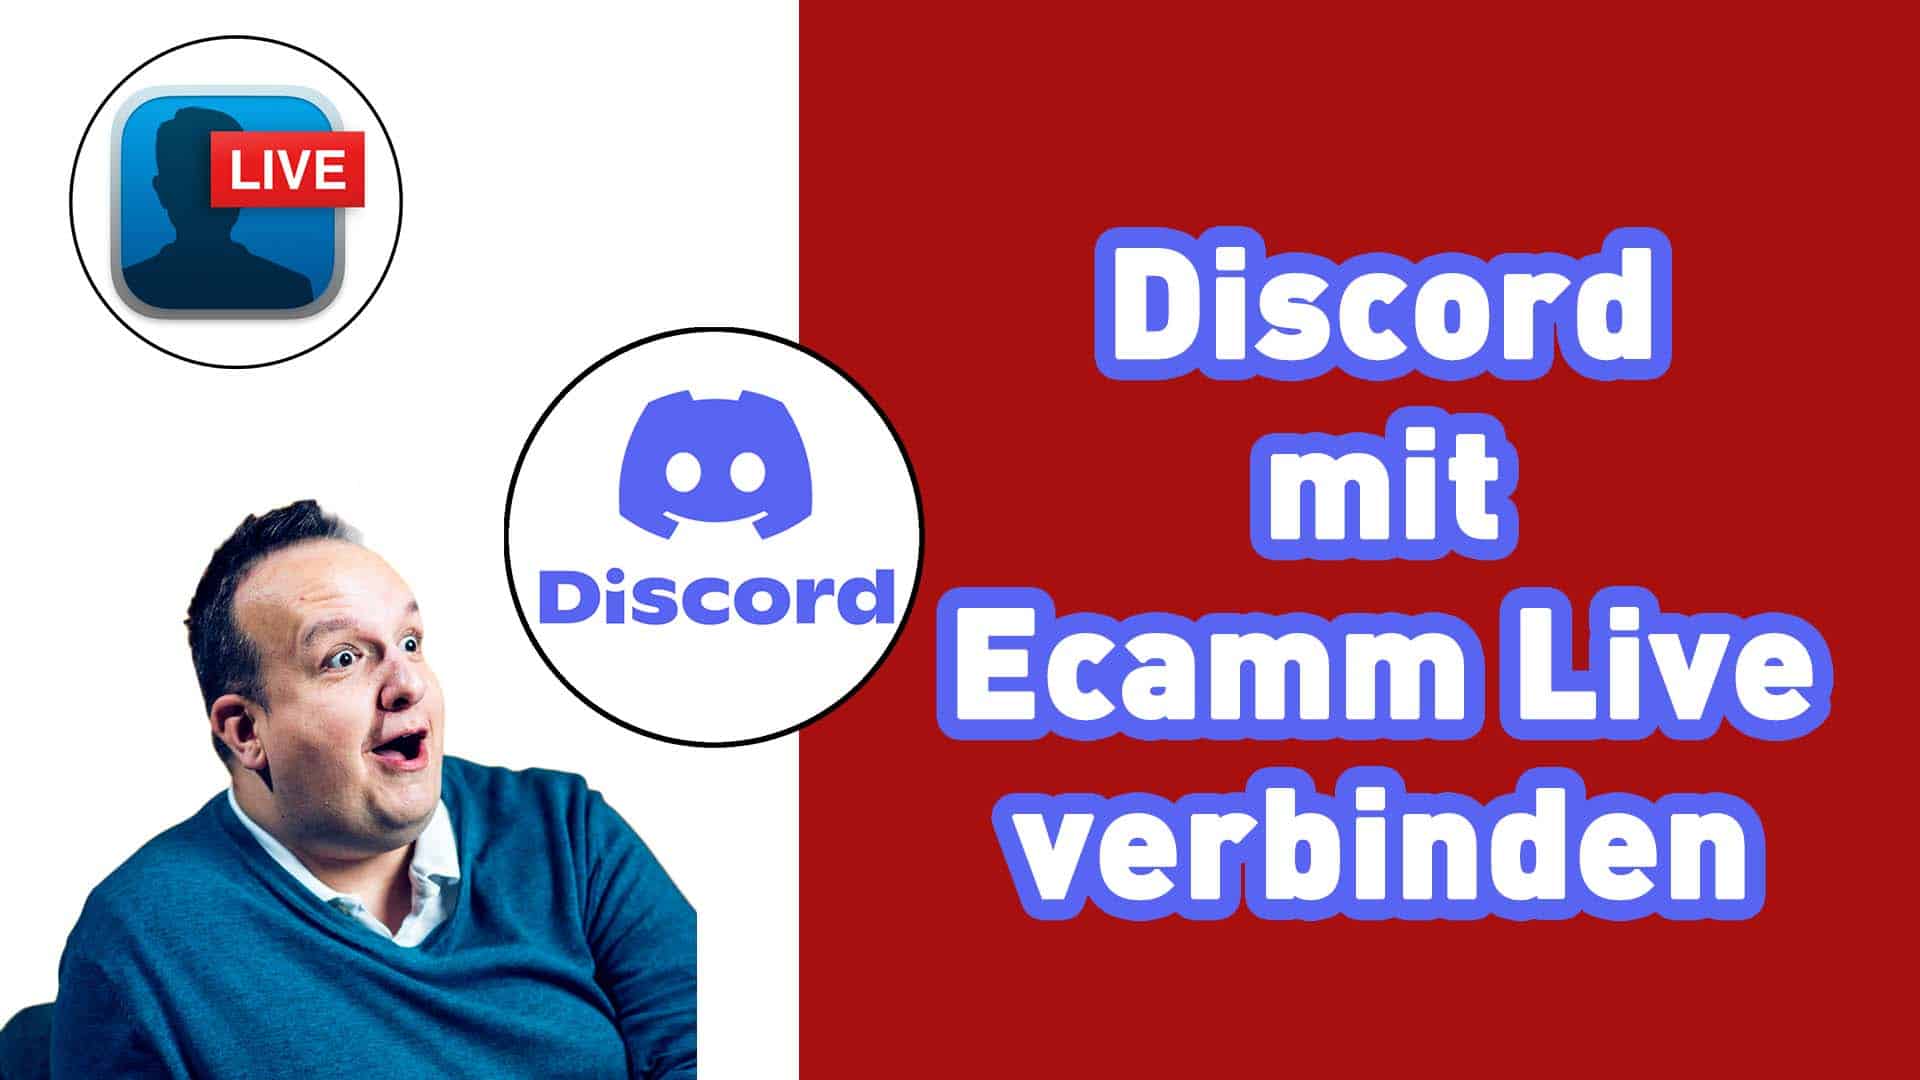 Wie man Ecamm Live mit dem Discord Sprachkanal und Videokanal verbinden kann